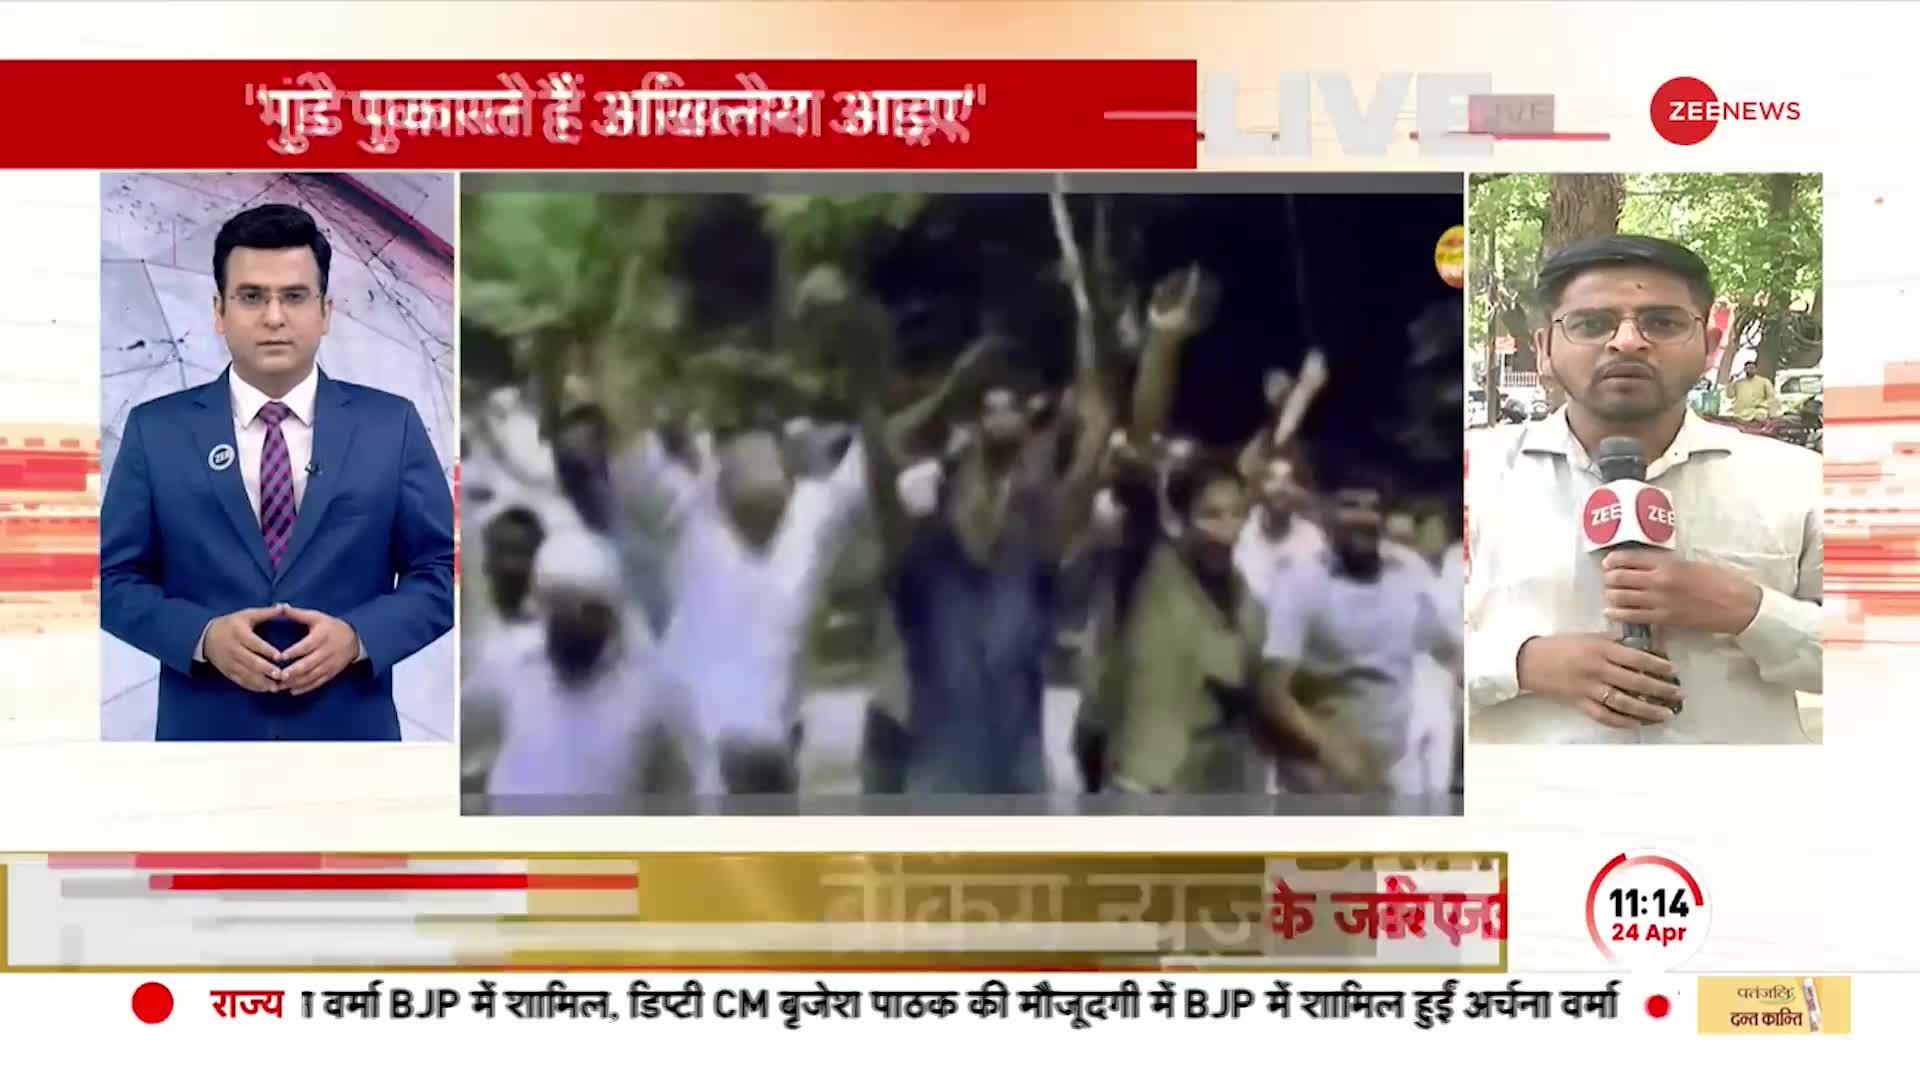 BJP Attacks Akhilesh Yadav: अखिलेश यादव पर बीजेपी का बड़ा हमला, 'गुंडे पुकारते हैं अखिलेश आइए'